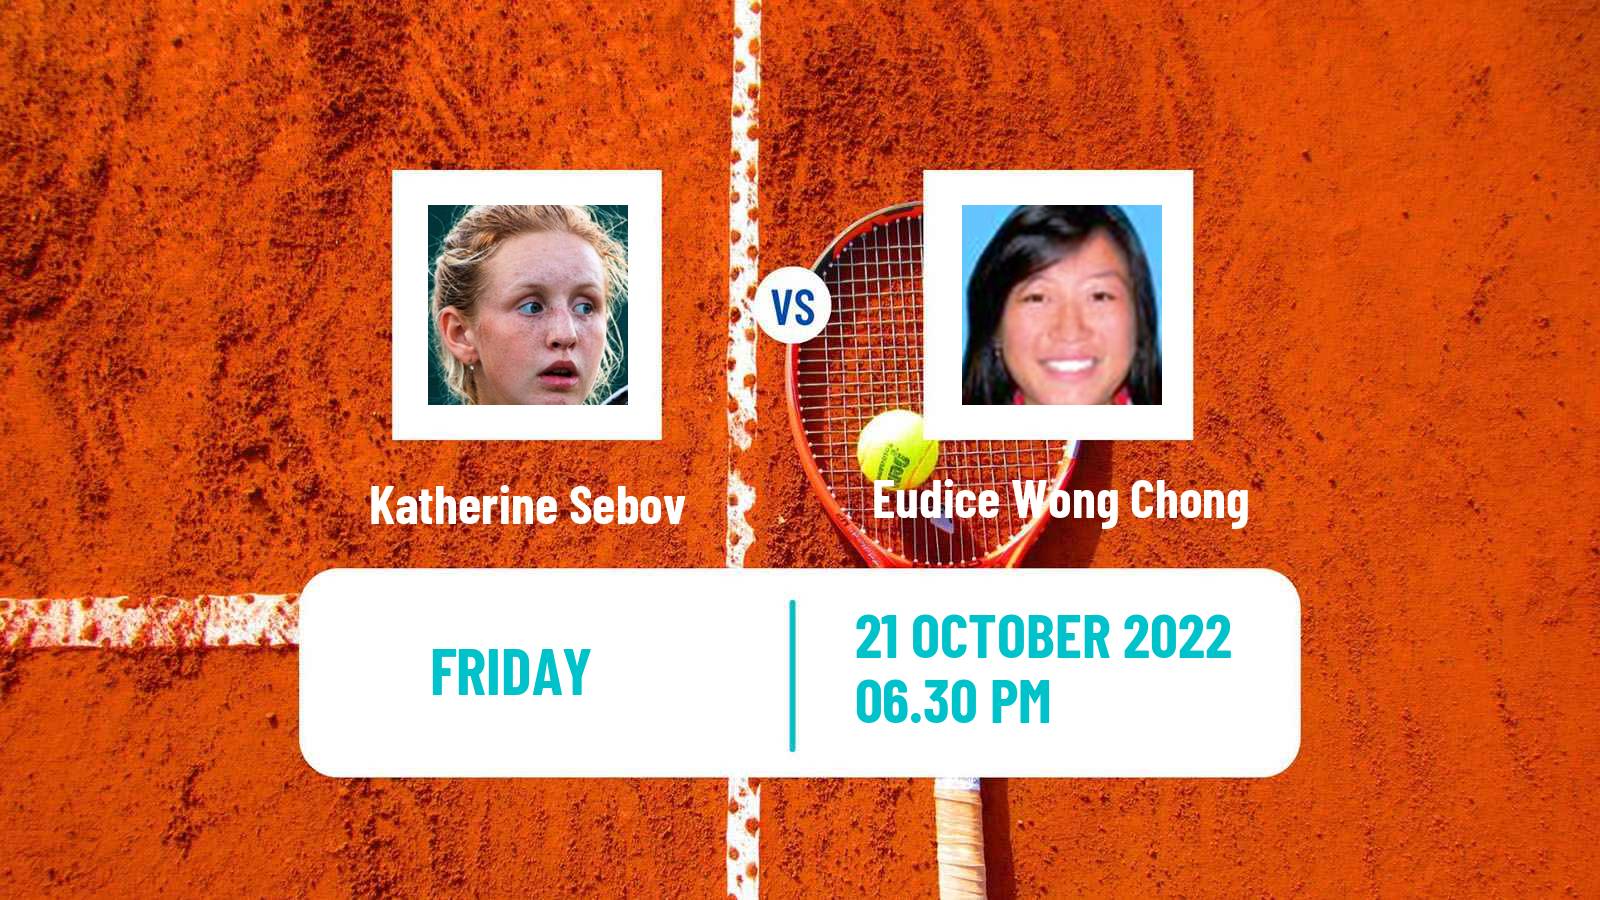 Tennis ITF Tournaments Katherine Sebov - Eudice Wong Chong